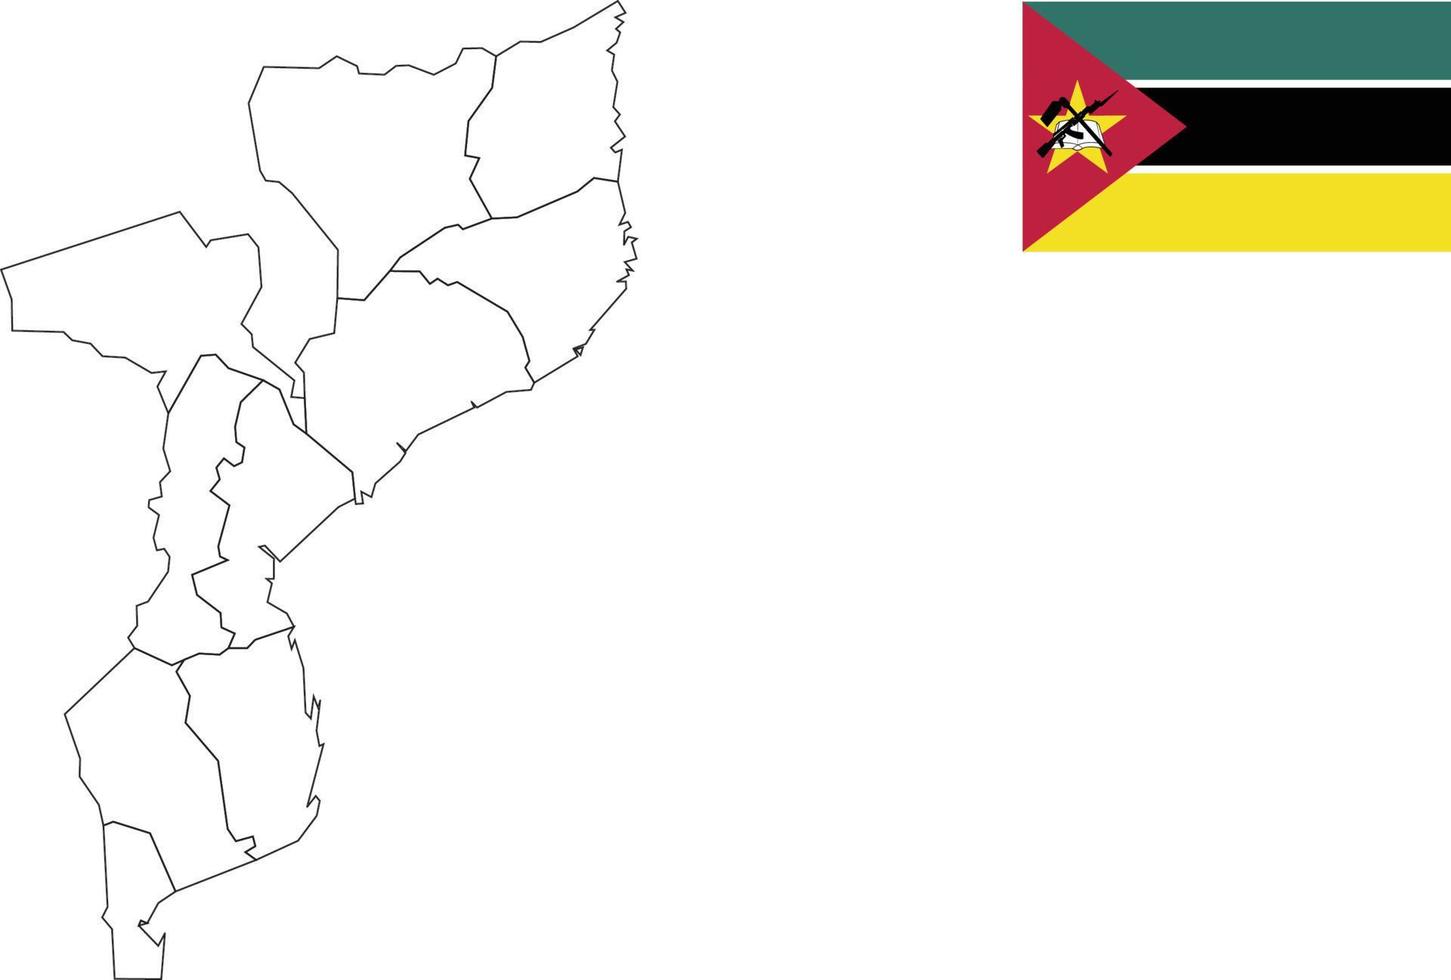 Karte und Flagge von Mosambik vektor